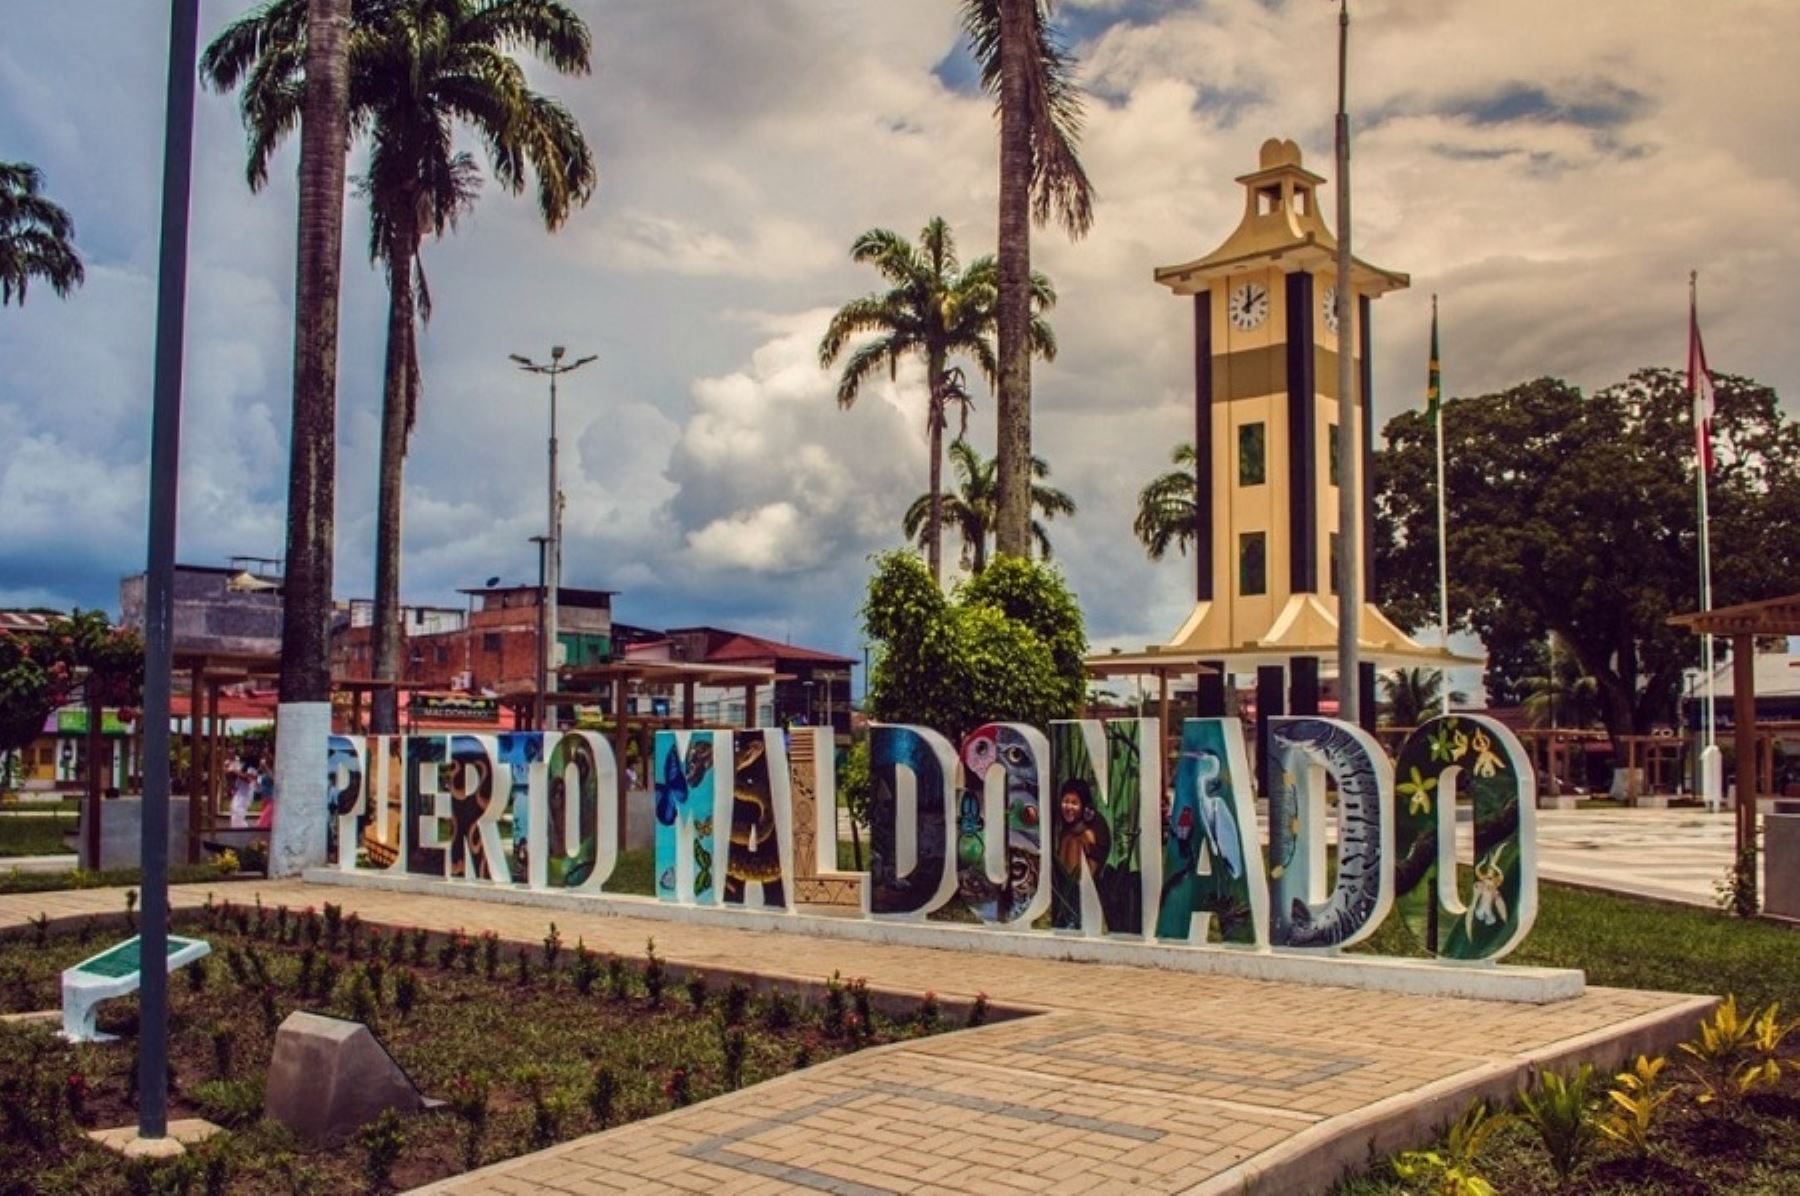 La ciudad de Puerto Maldonado, capital del departamento de Madre de Dios, se alista a celebrar este 10 de julio su 120 aniversario de creación política, ofreciendo a sus visitantes una amplia gama de atractivos turísticos como su bella Plaza de Armas.